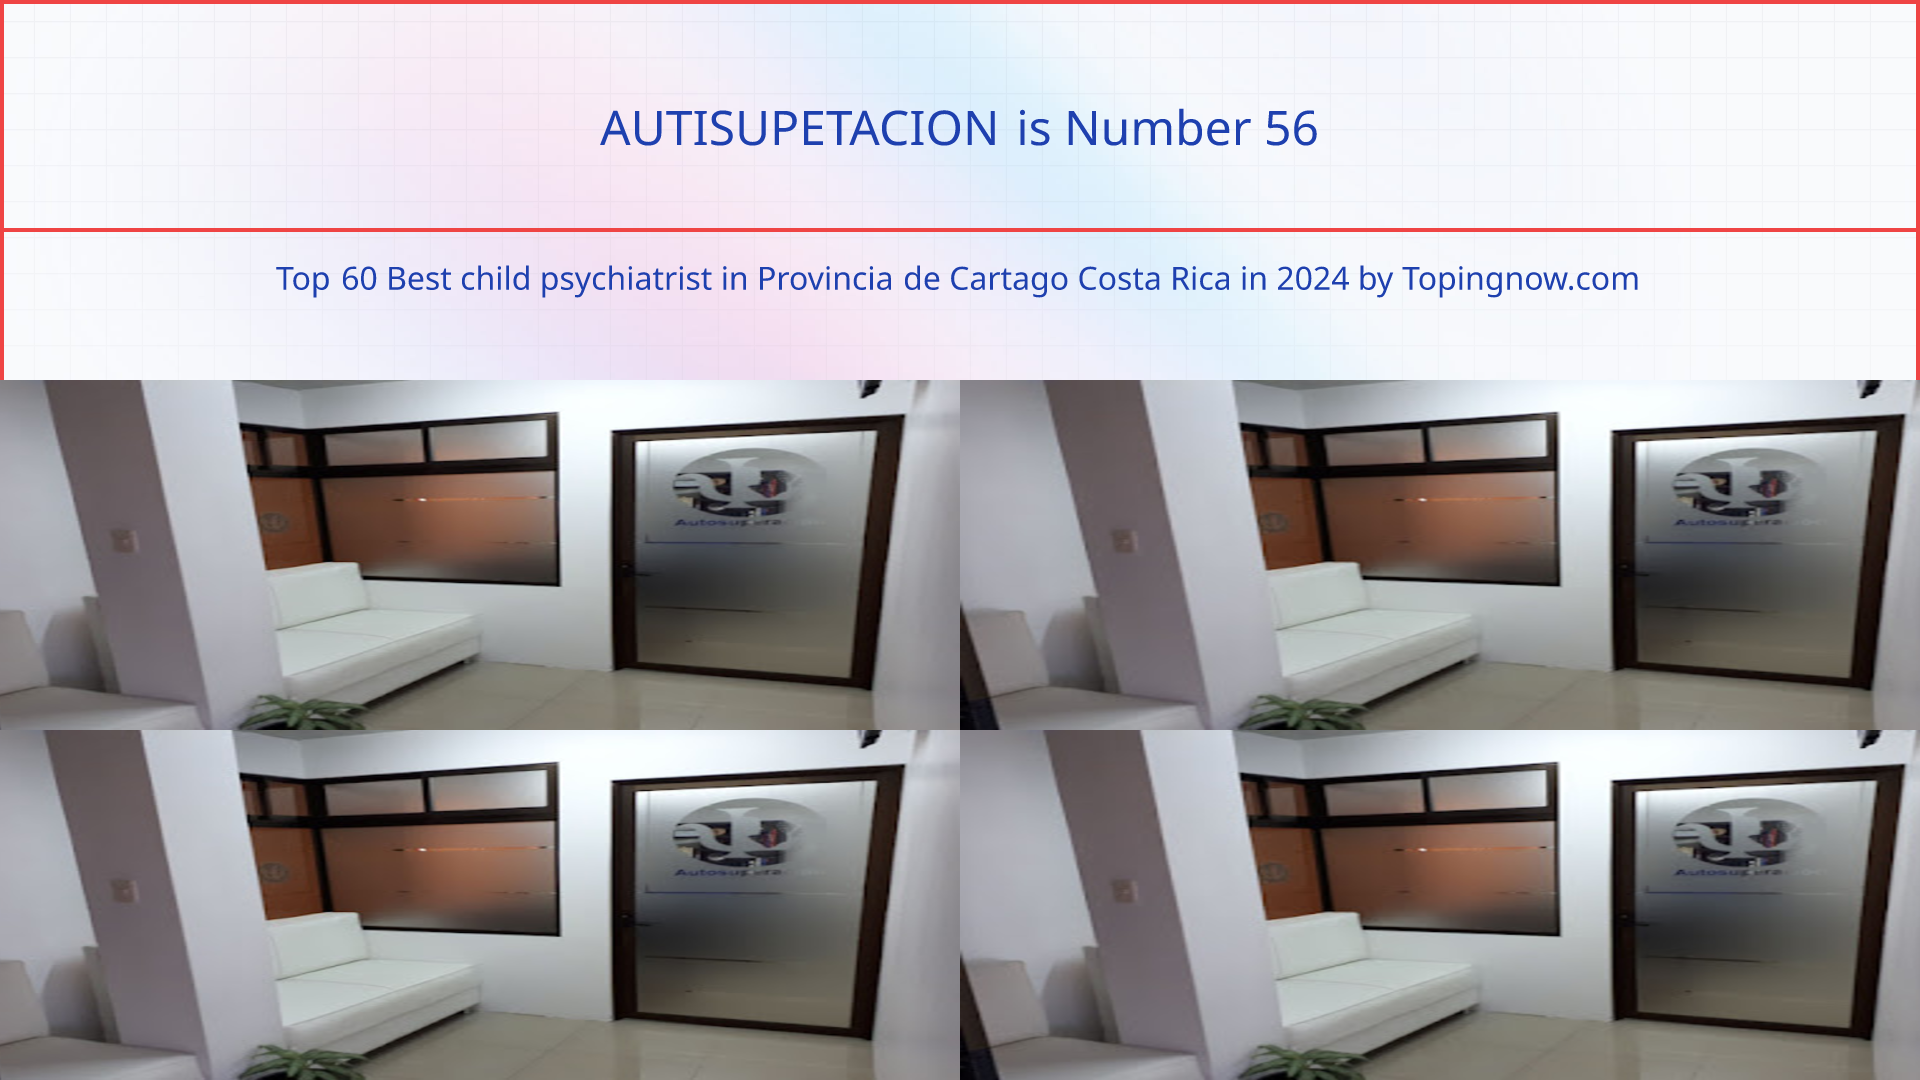 AUTISUPETACION: Top 60 Best child psychiatrist in Provincia de Cartago Costa Rica in 2024